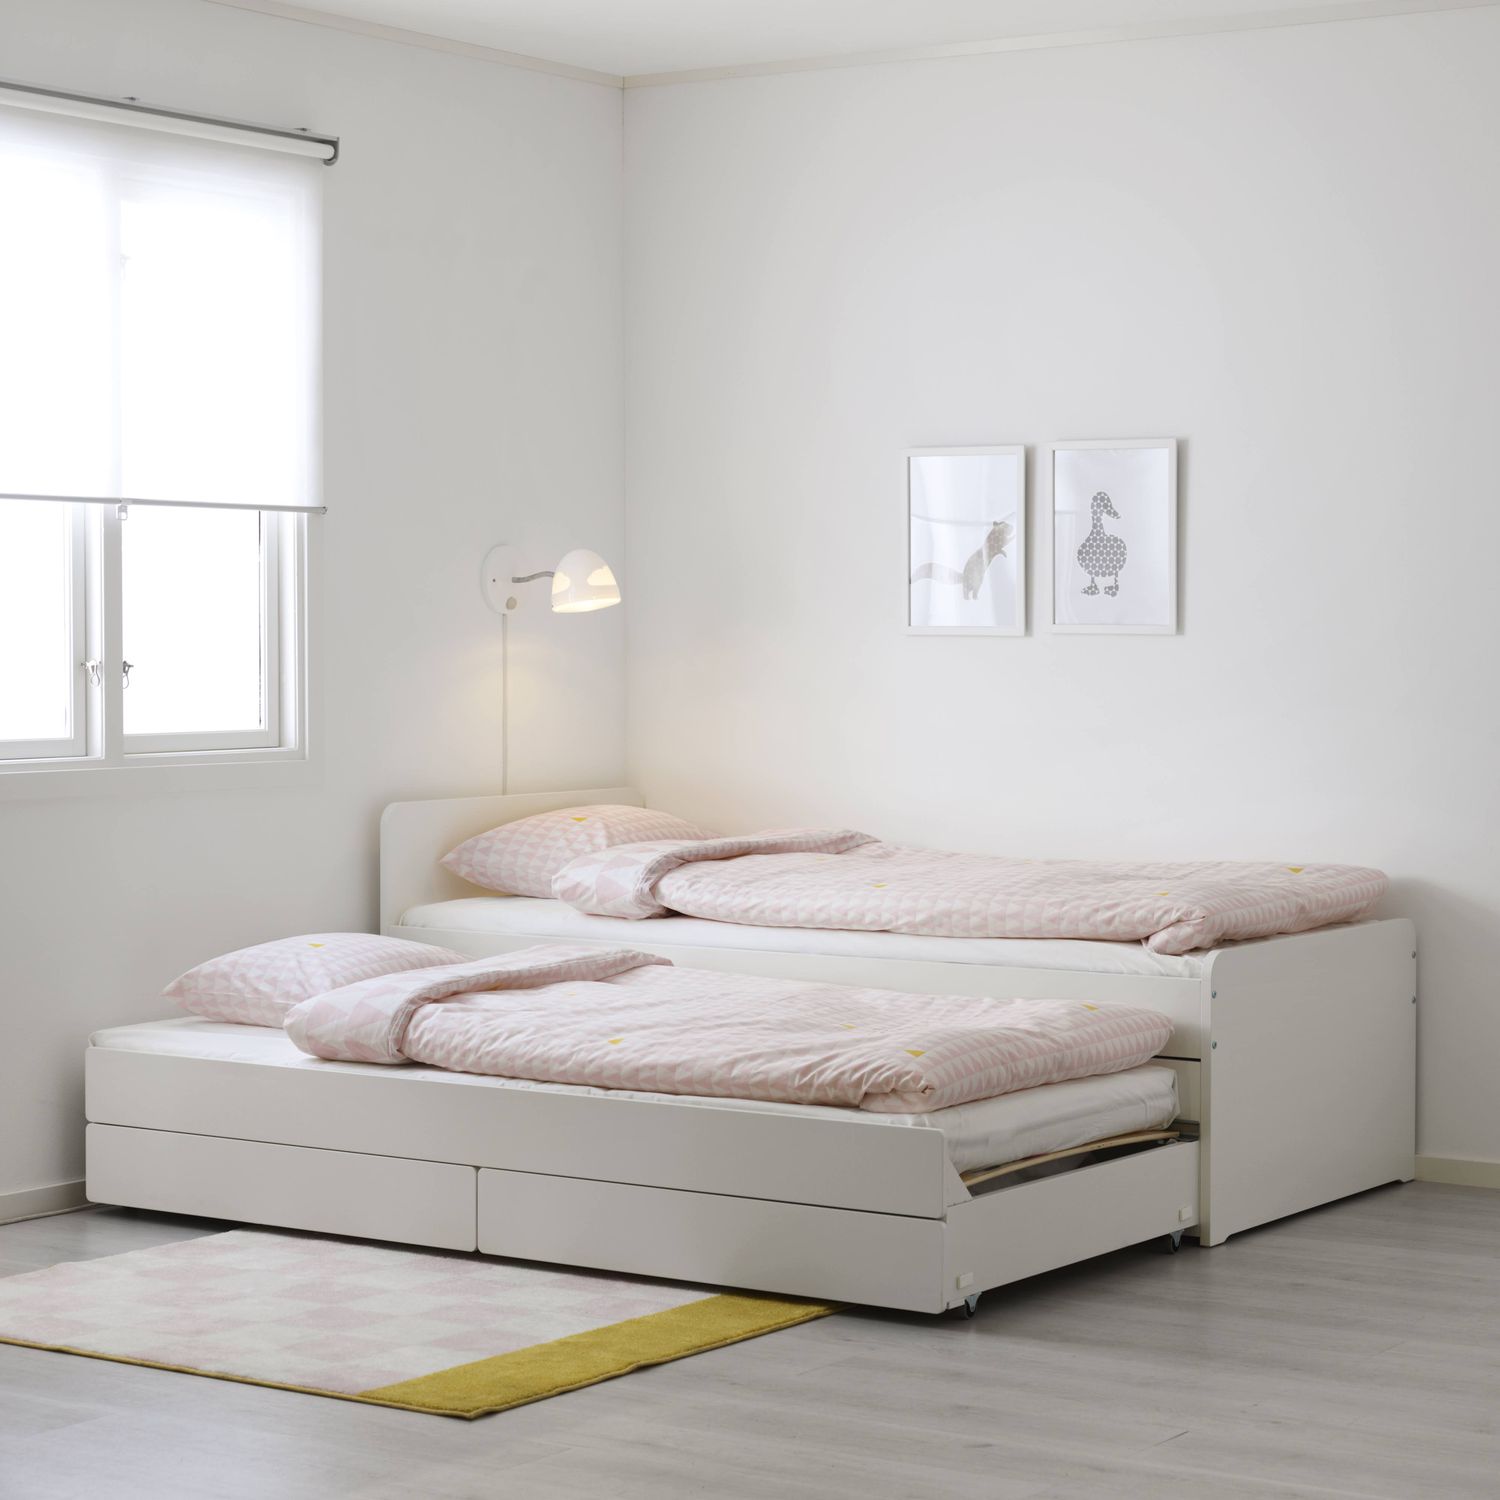 IKEA SL?KT Bettrahmen mit ausziehbarem Bett + Stauraum